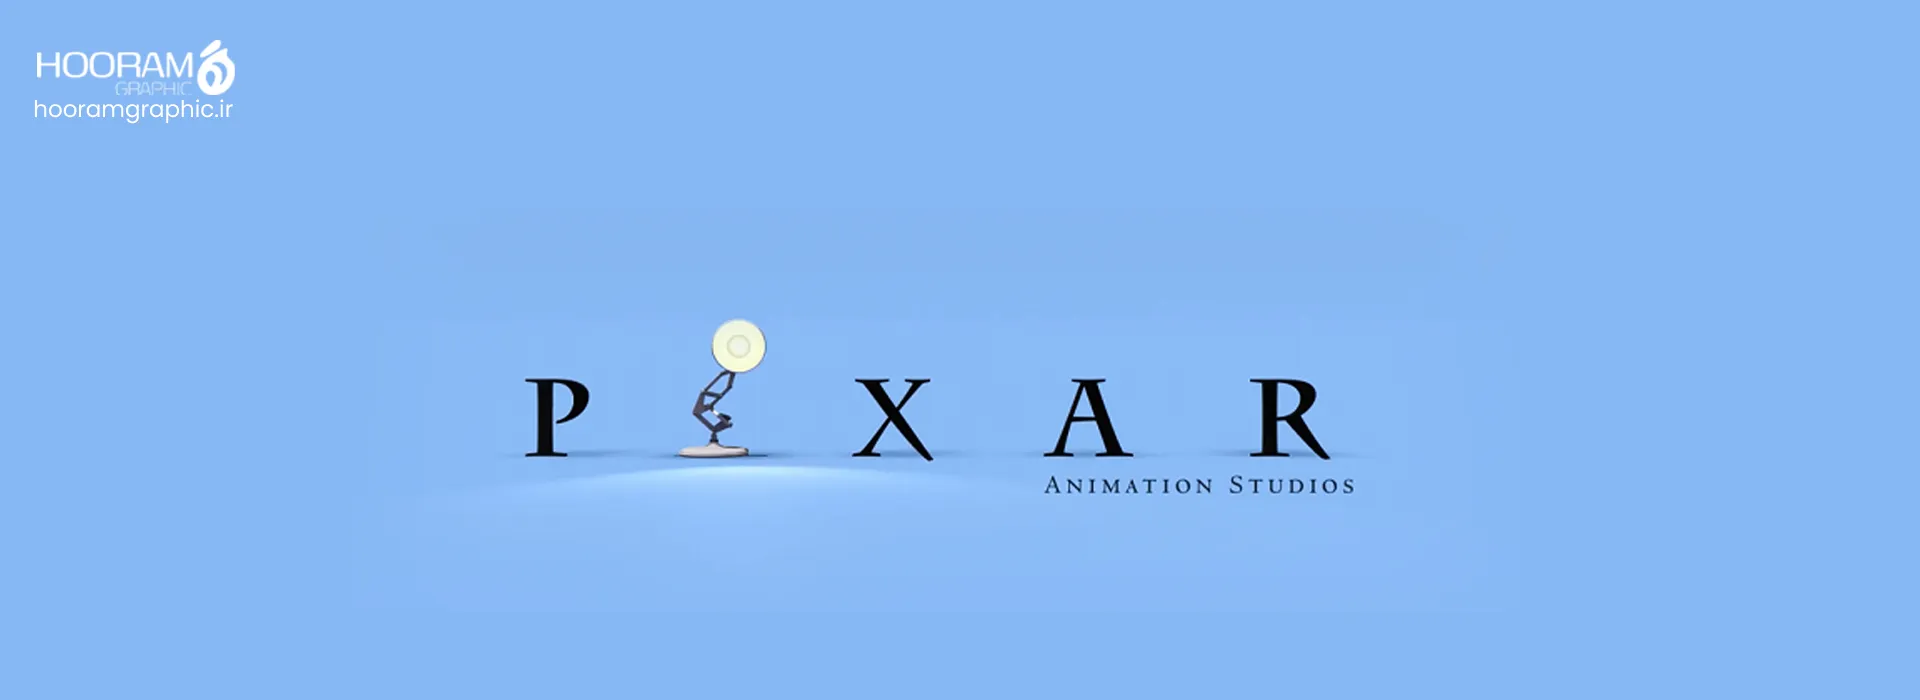 pixar- شرکت های انیمیشن